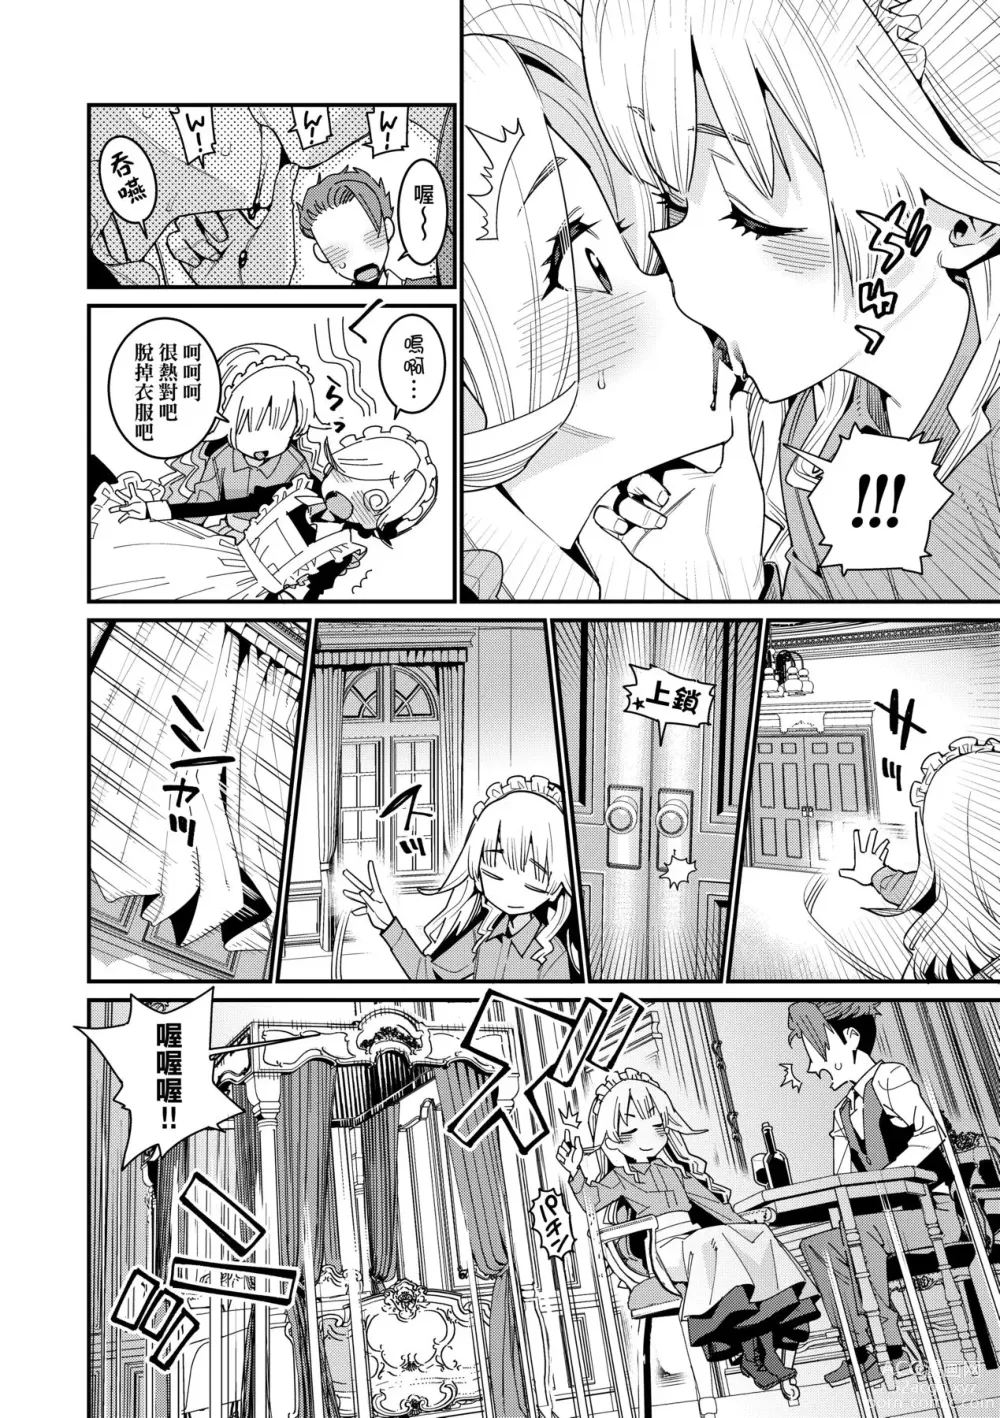 Page 31 of manga Itoshiki Wagaya (decensored)